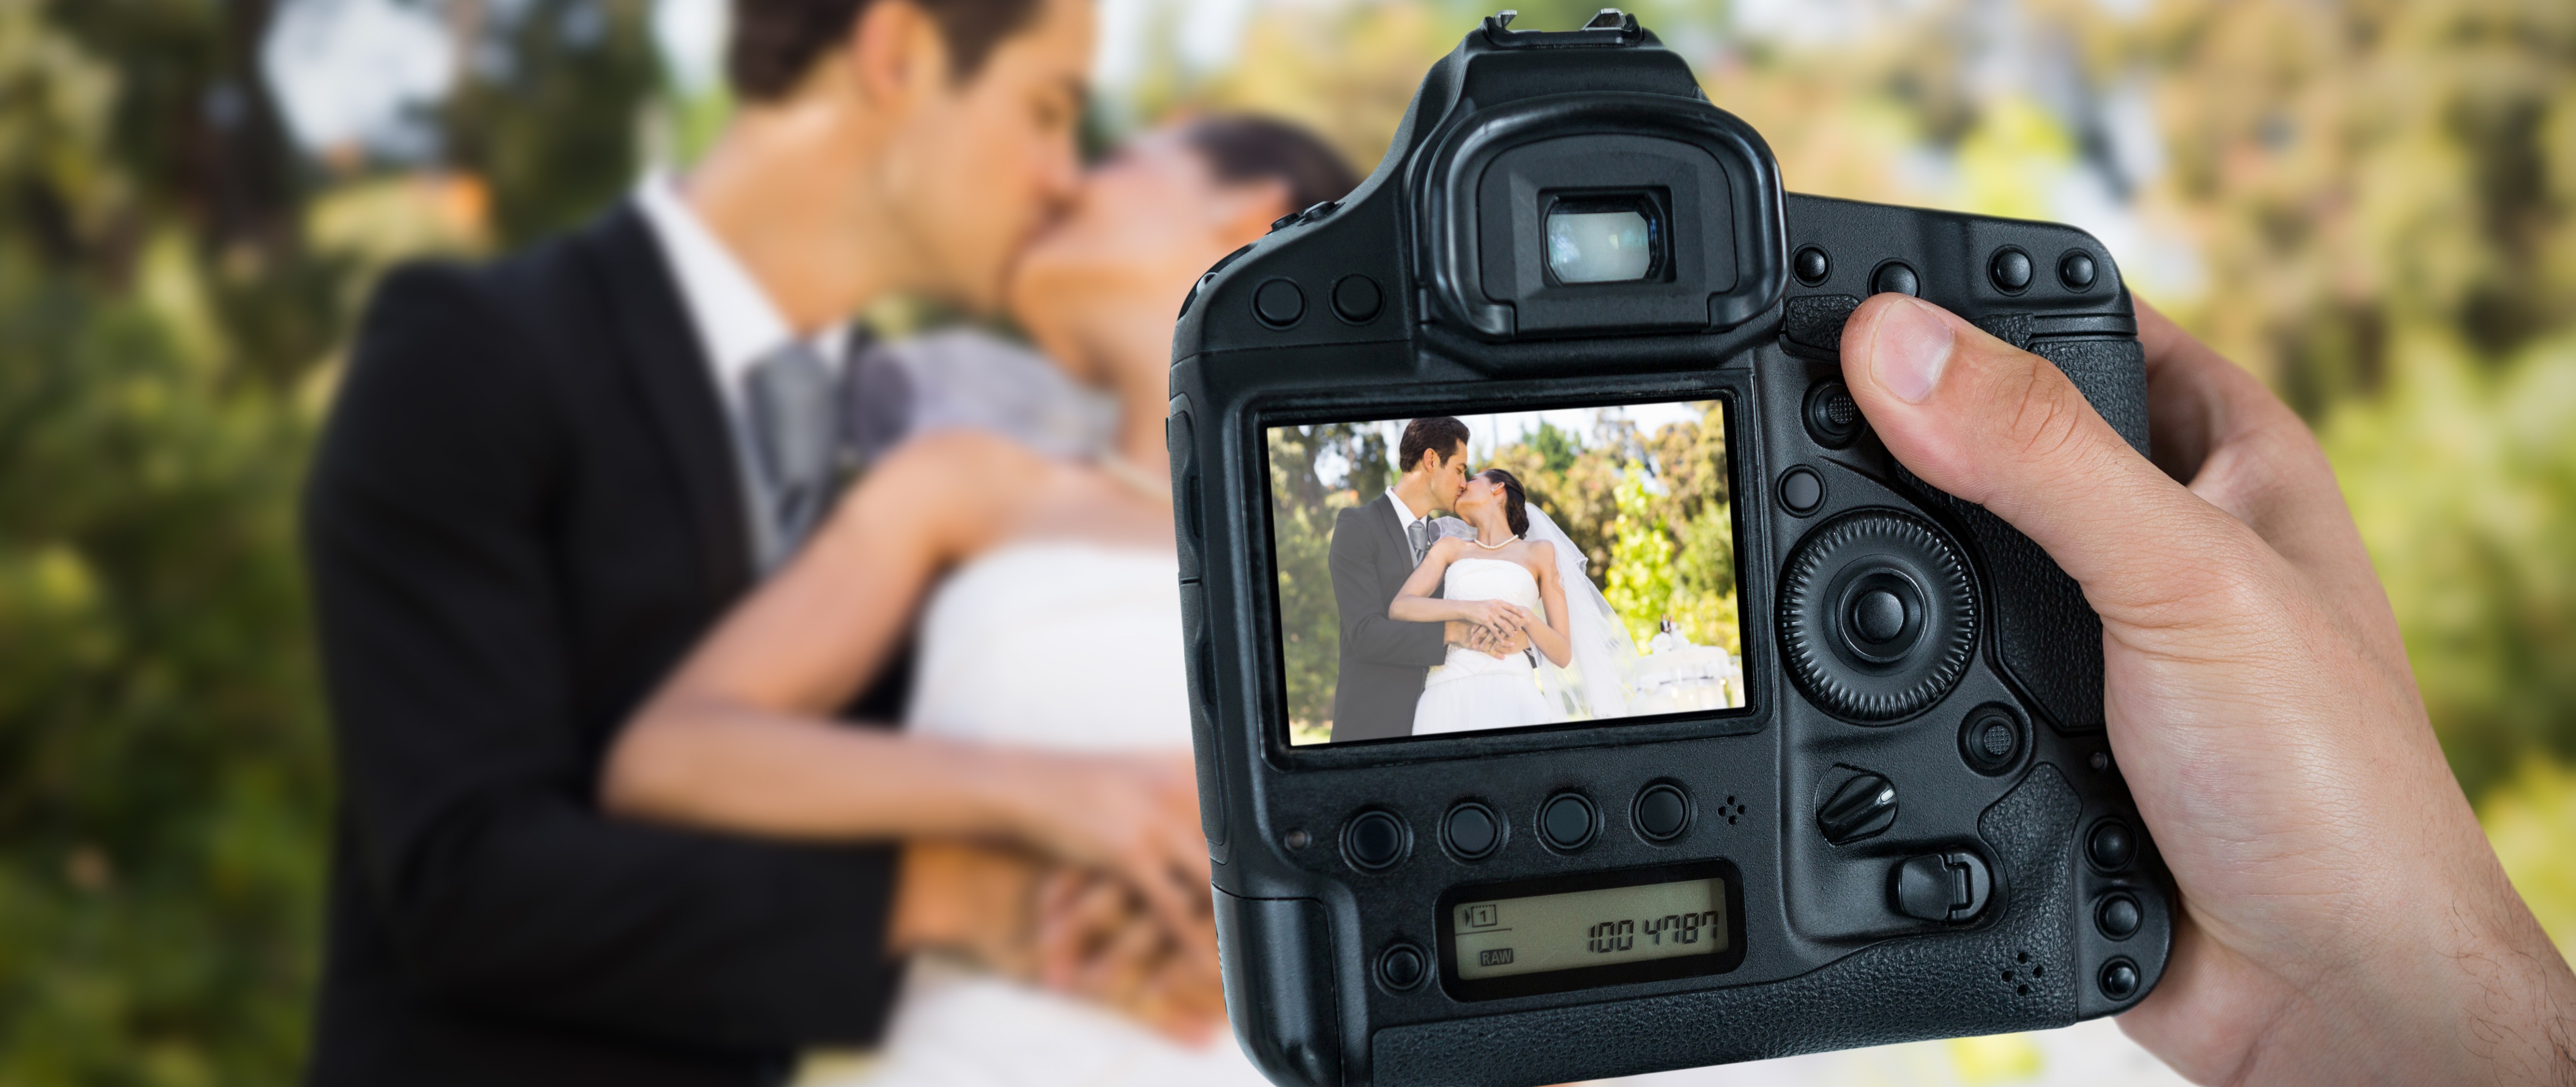 5 Hochzeitsfotografie-Tipps von Profis für deinen grossen Tag